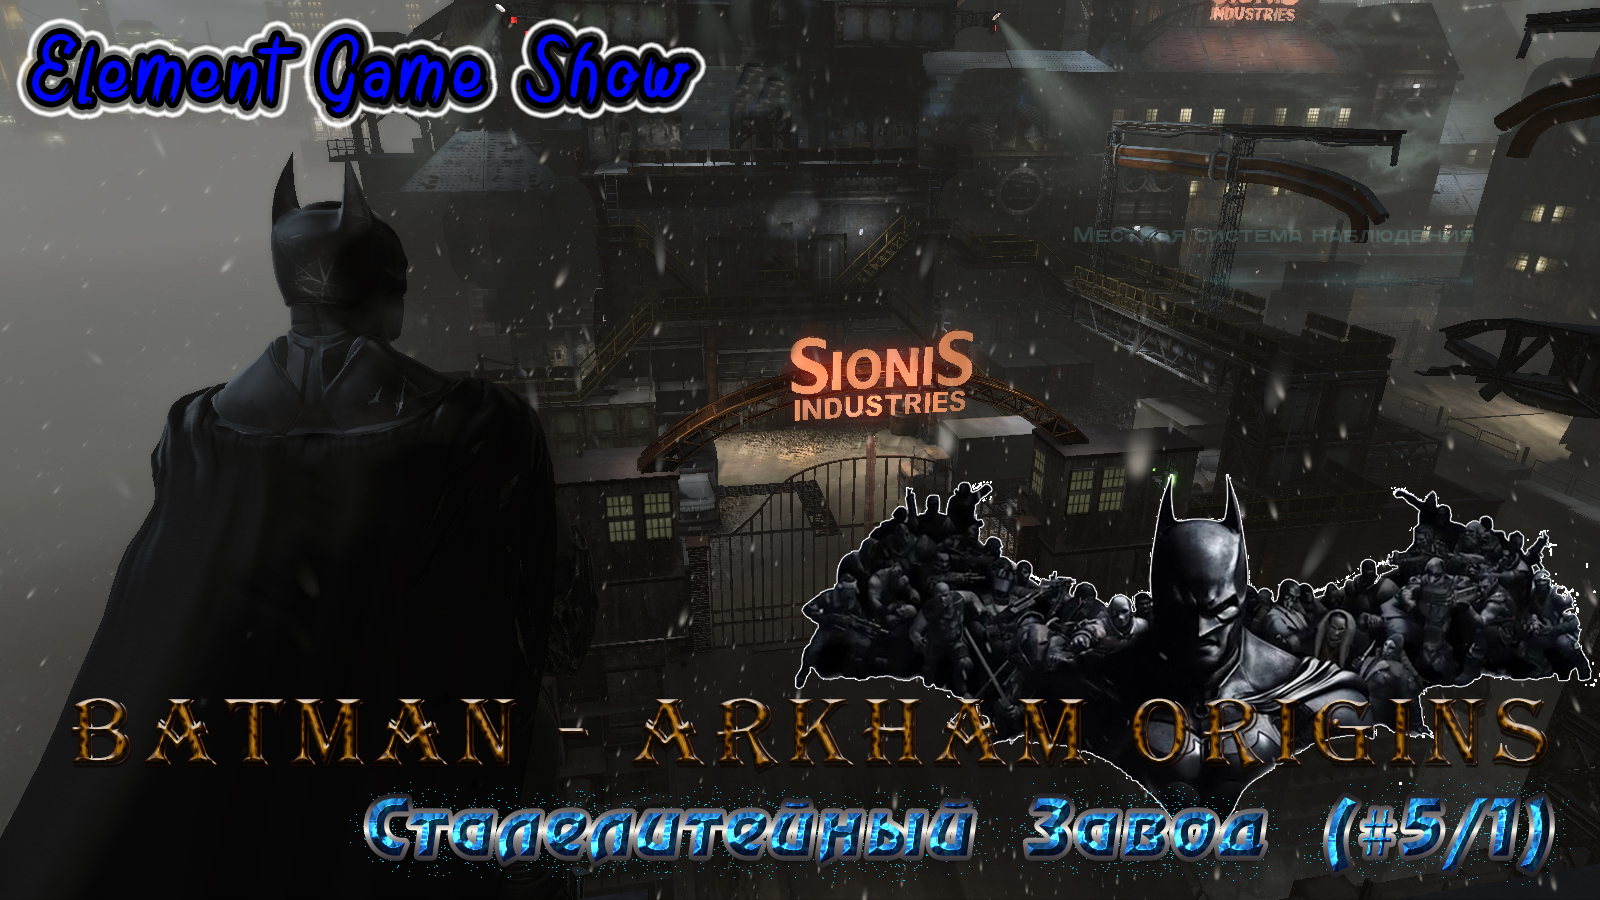 Ⓔ Batman - Arkham Origins Прохождение Ⓖ Сталелитейный Завод (#5/1) Ⓢ